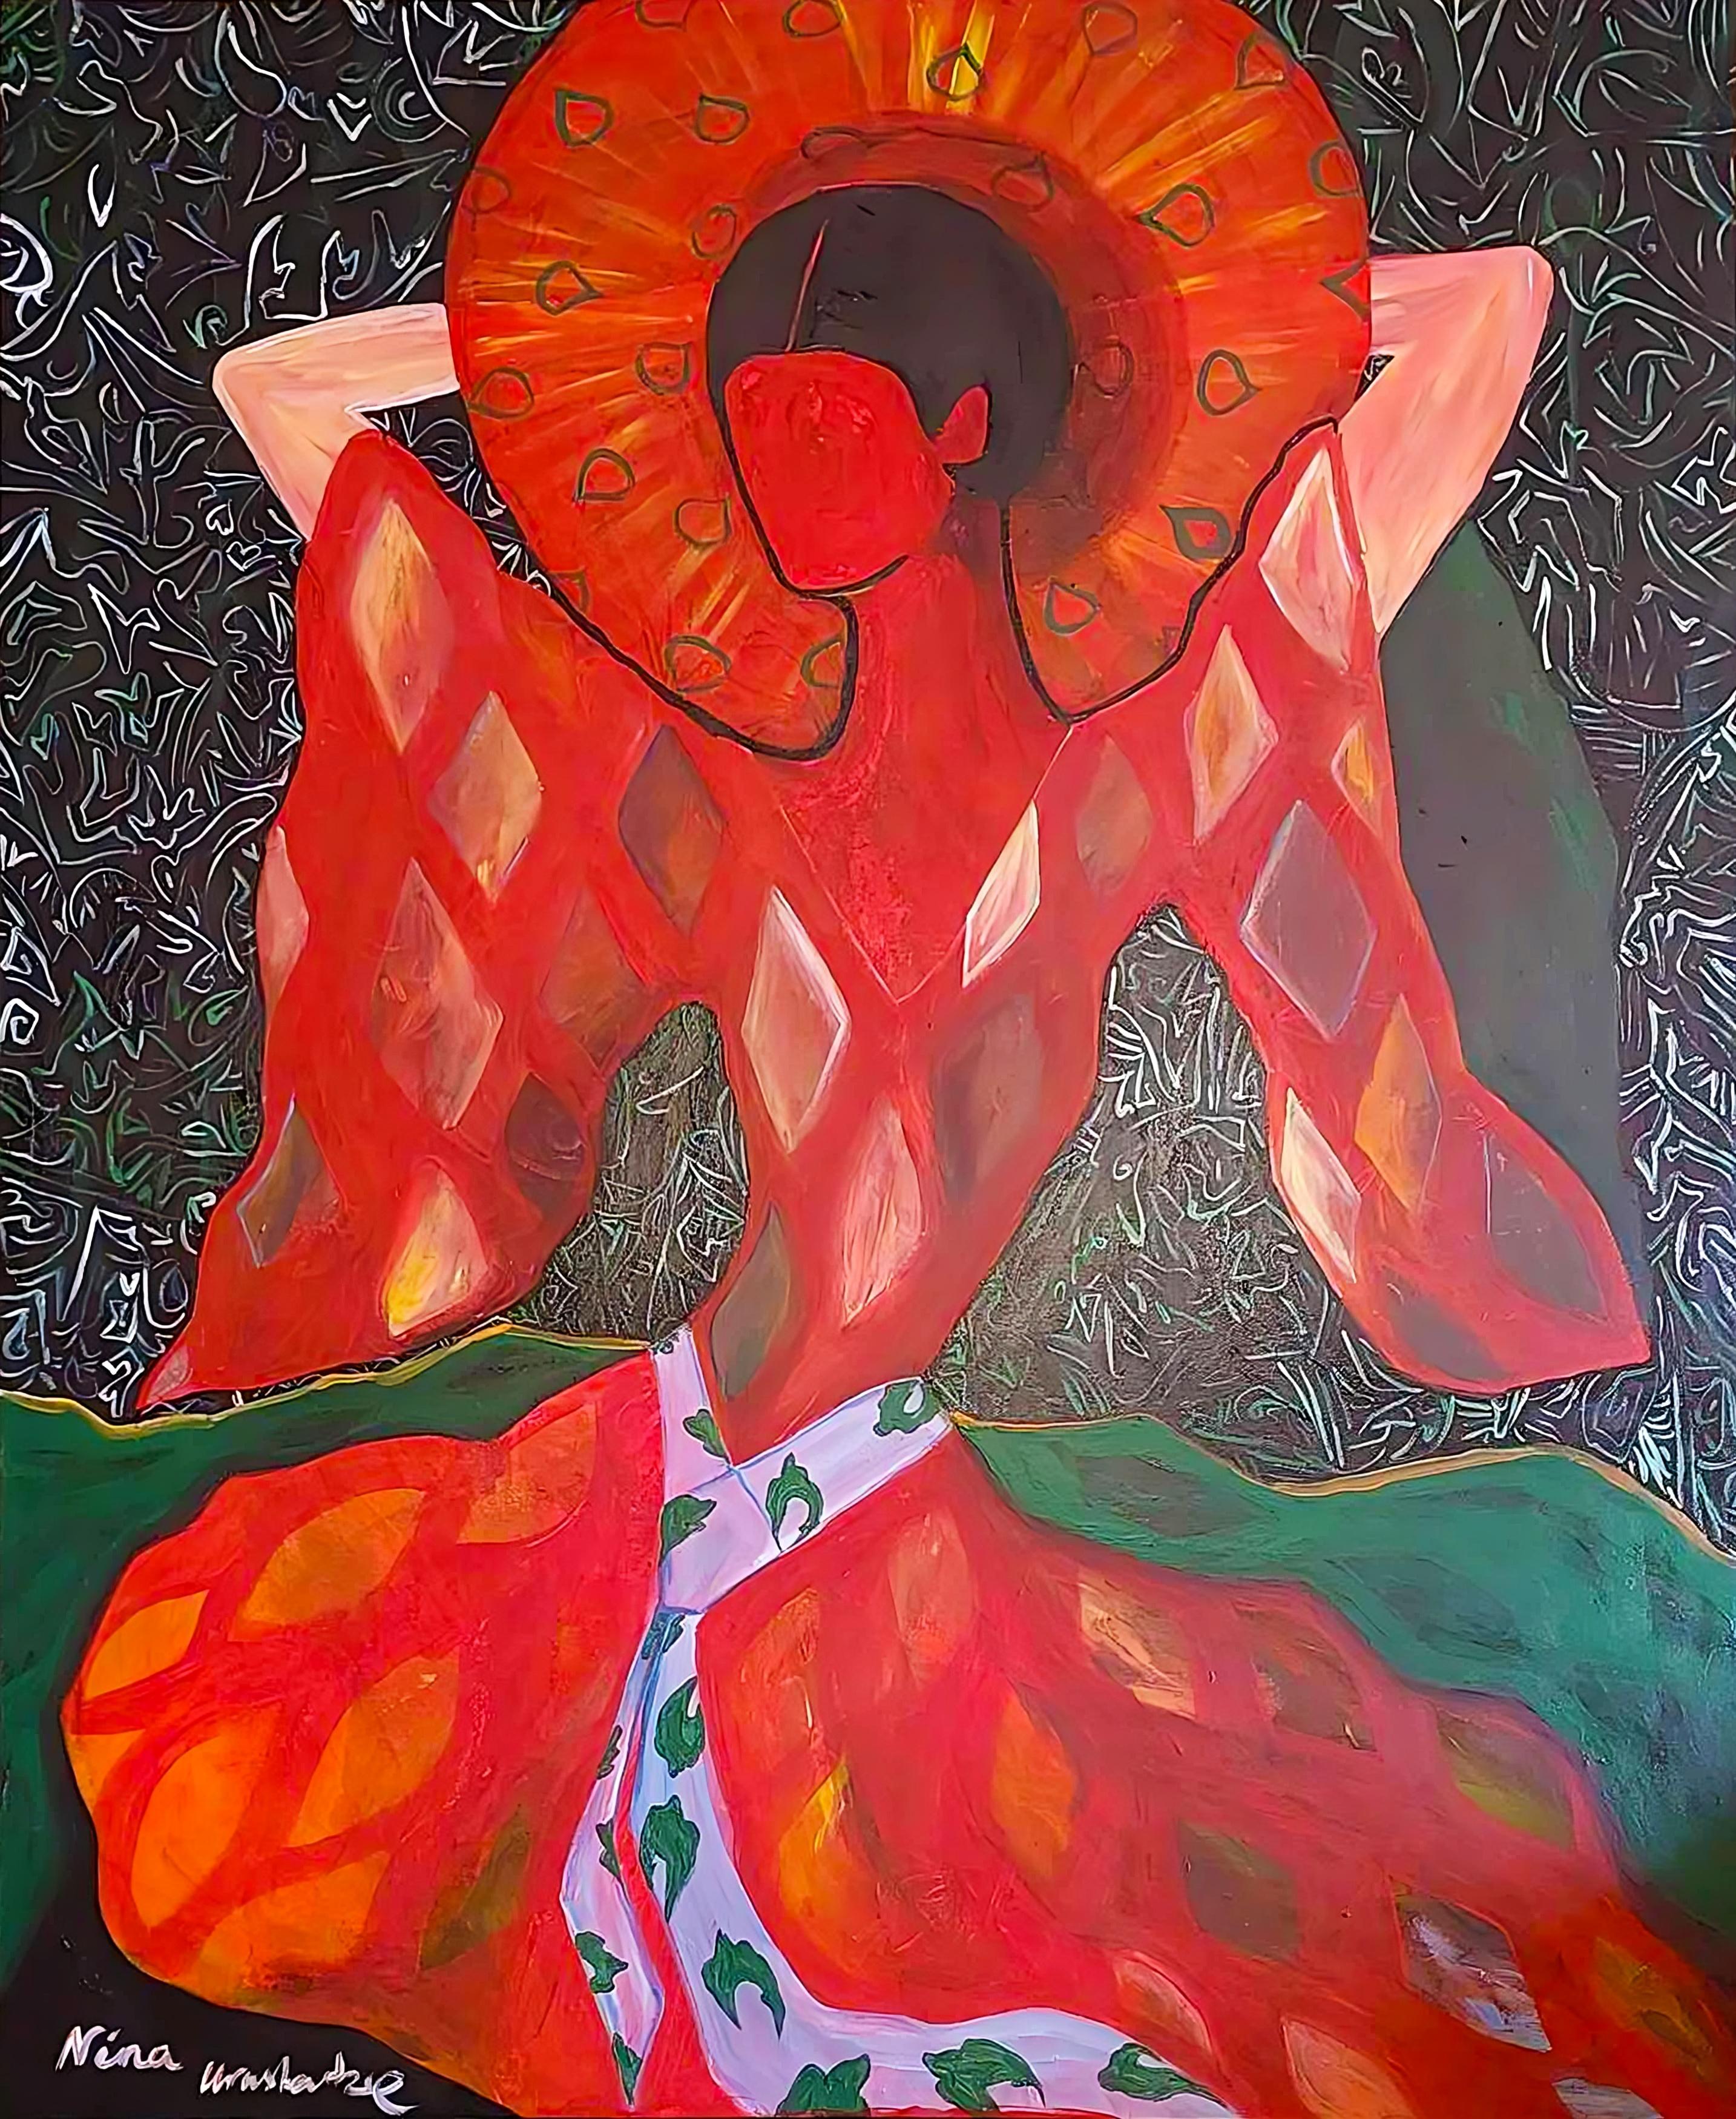 Acrylique sur toile

Nina Artistics est une artiste géorgienne née en 1983 qui vit et travaille à Tbilissi, en Géorgie. Elle est diplômée de l'Apollon Kutateladze de l'Académie nationale des arts de Tbilissi et de l'Institut d'Asie et d'Afrique de